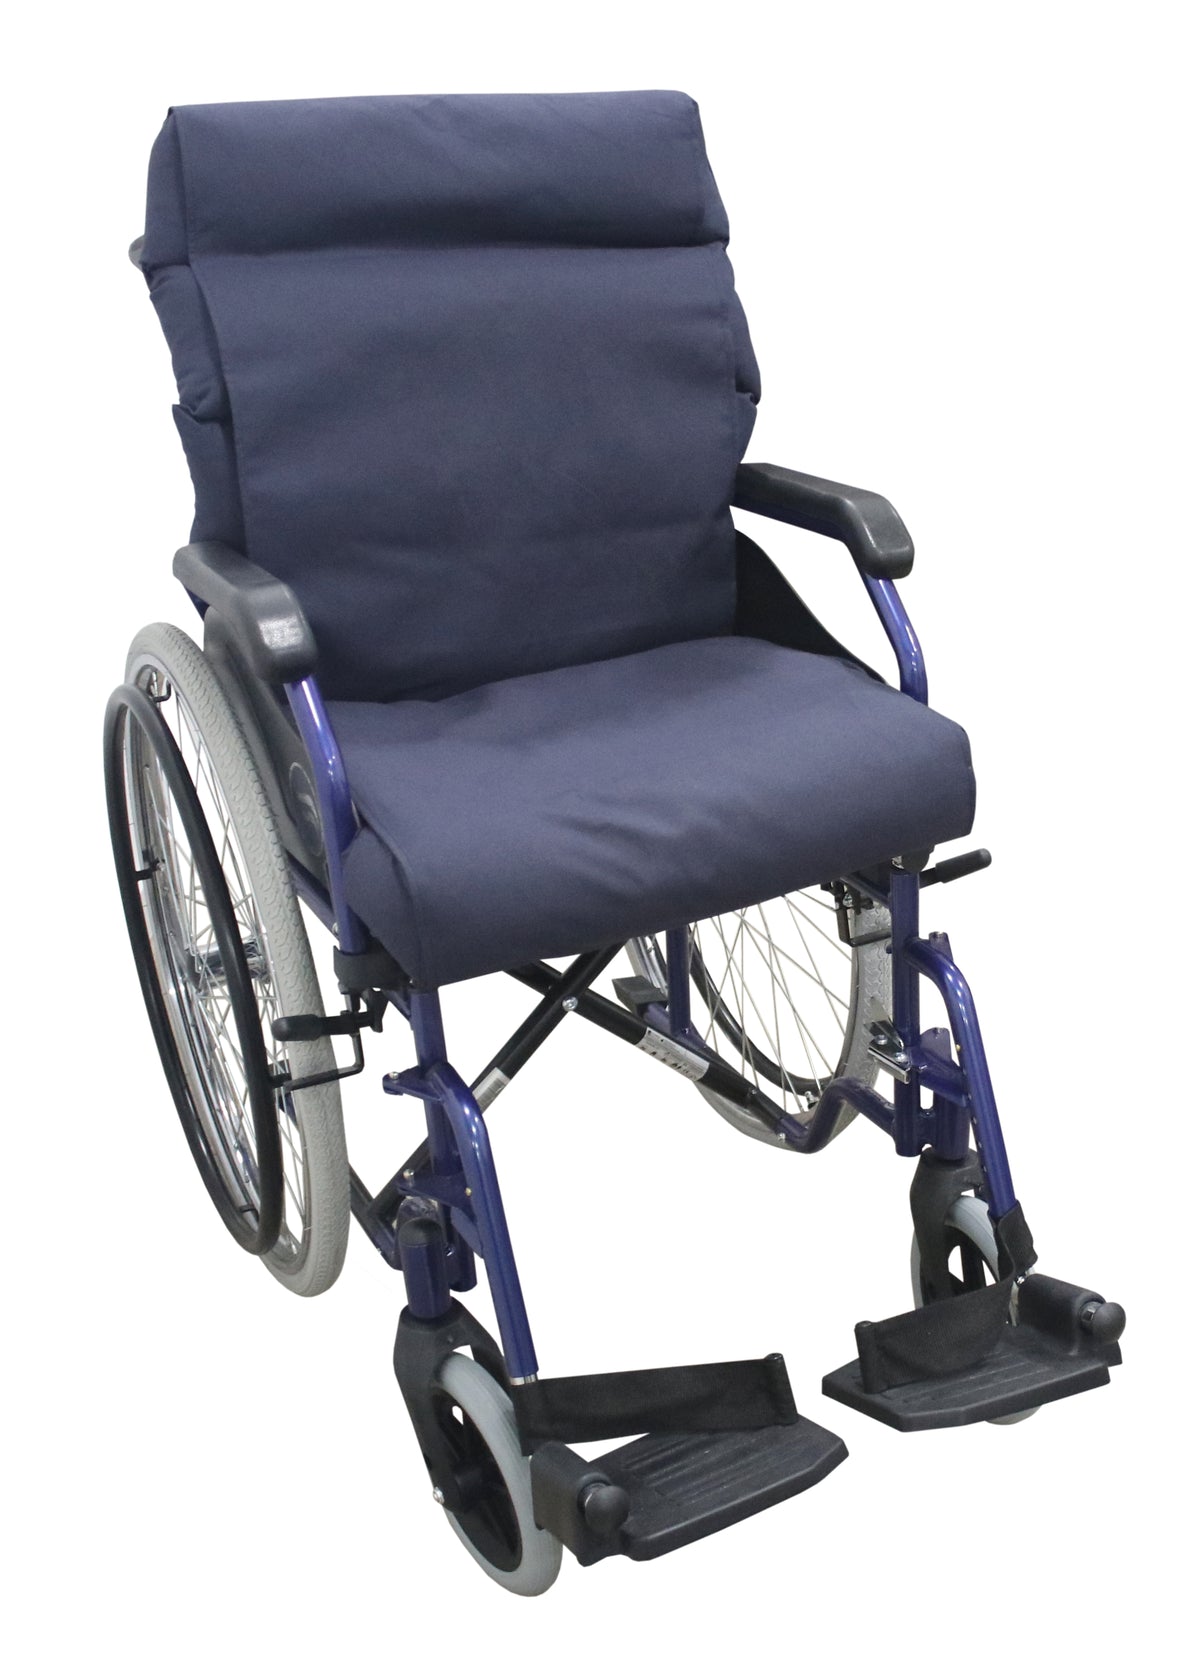 Almofada modular anti-escaras para cadeira rodas